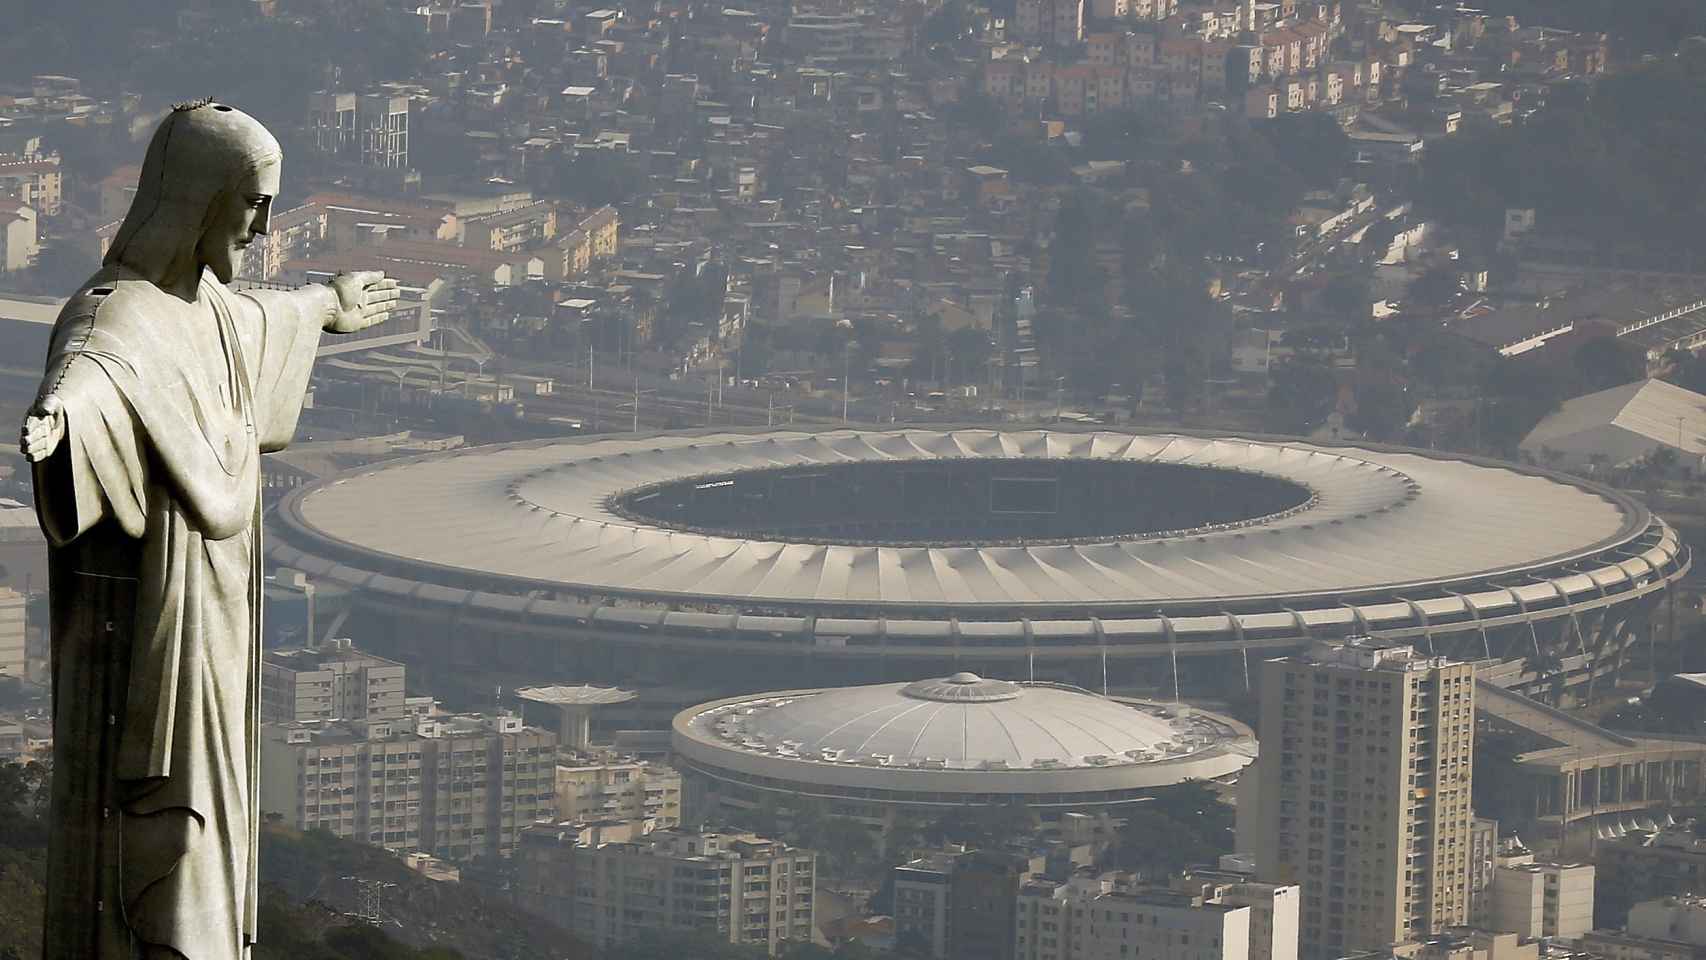 Vista aérea del estadio Maracaná, donde se celebrará la ceremonia inaugural.